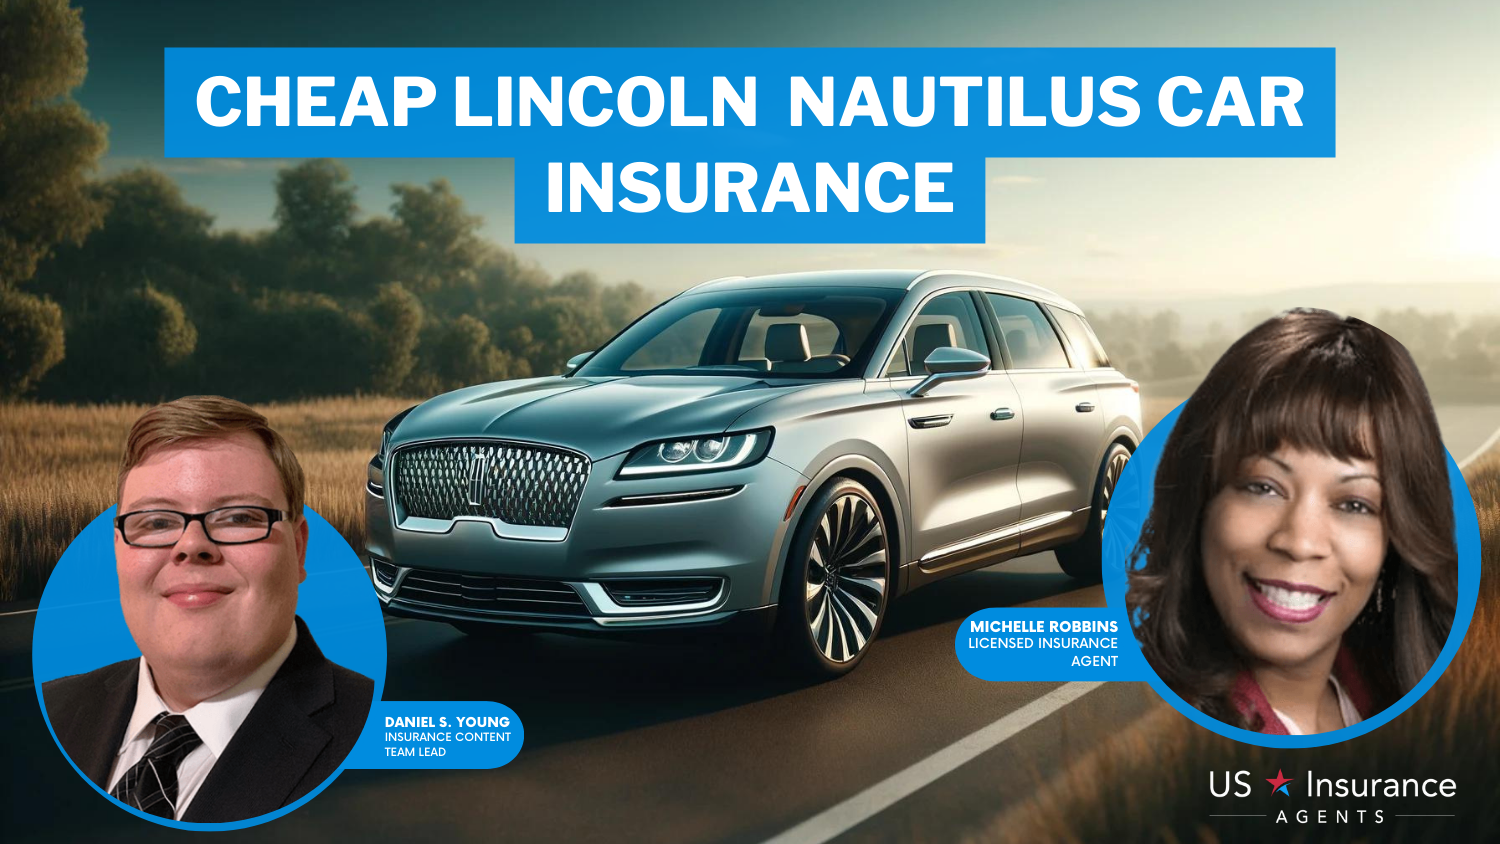 Cheap Lincoln Nautilus Car Insurance: Progressive, State Farm, and Allstate